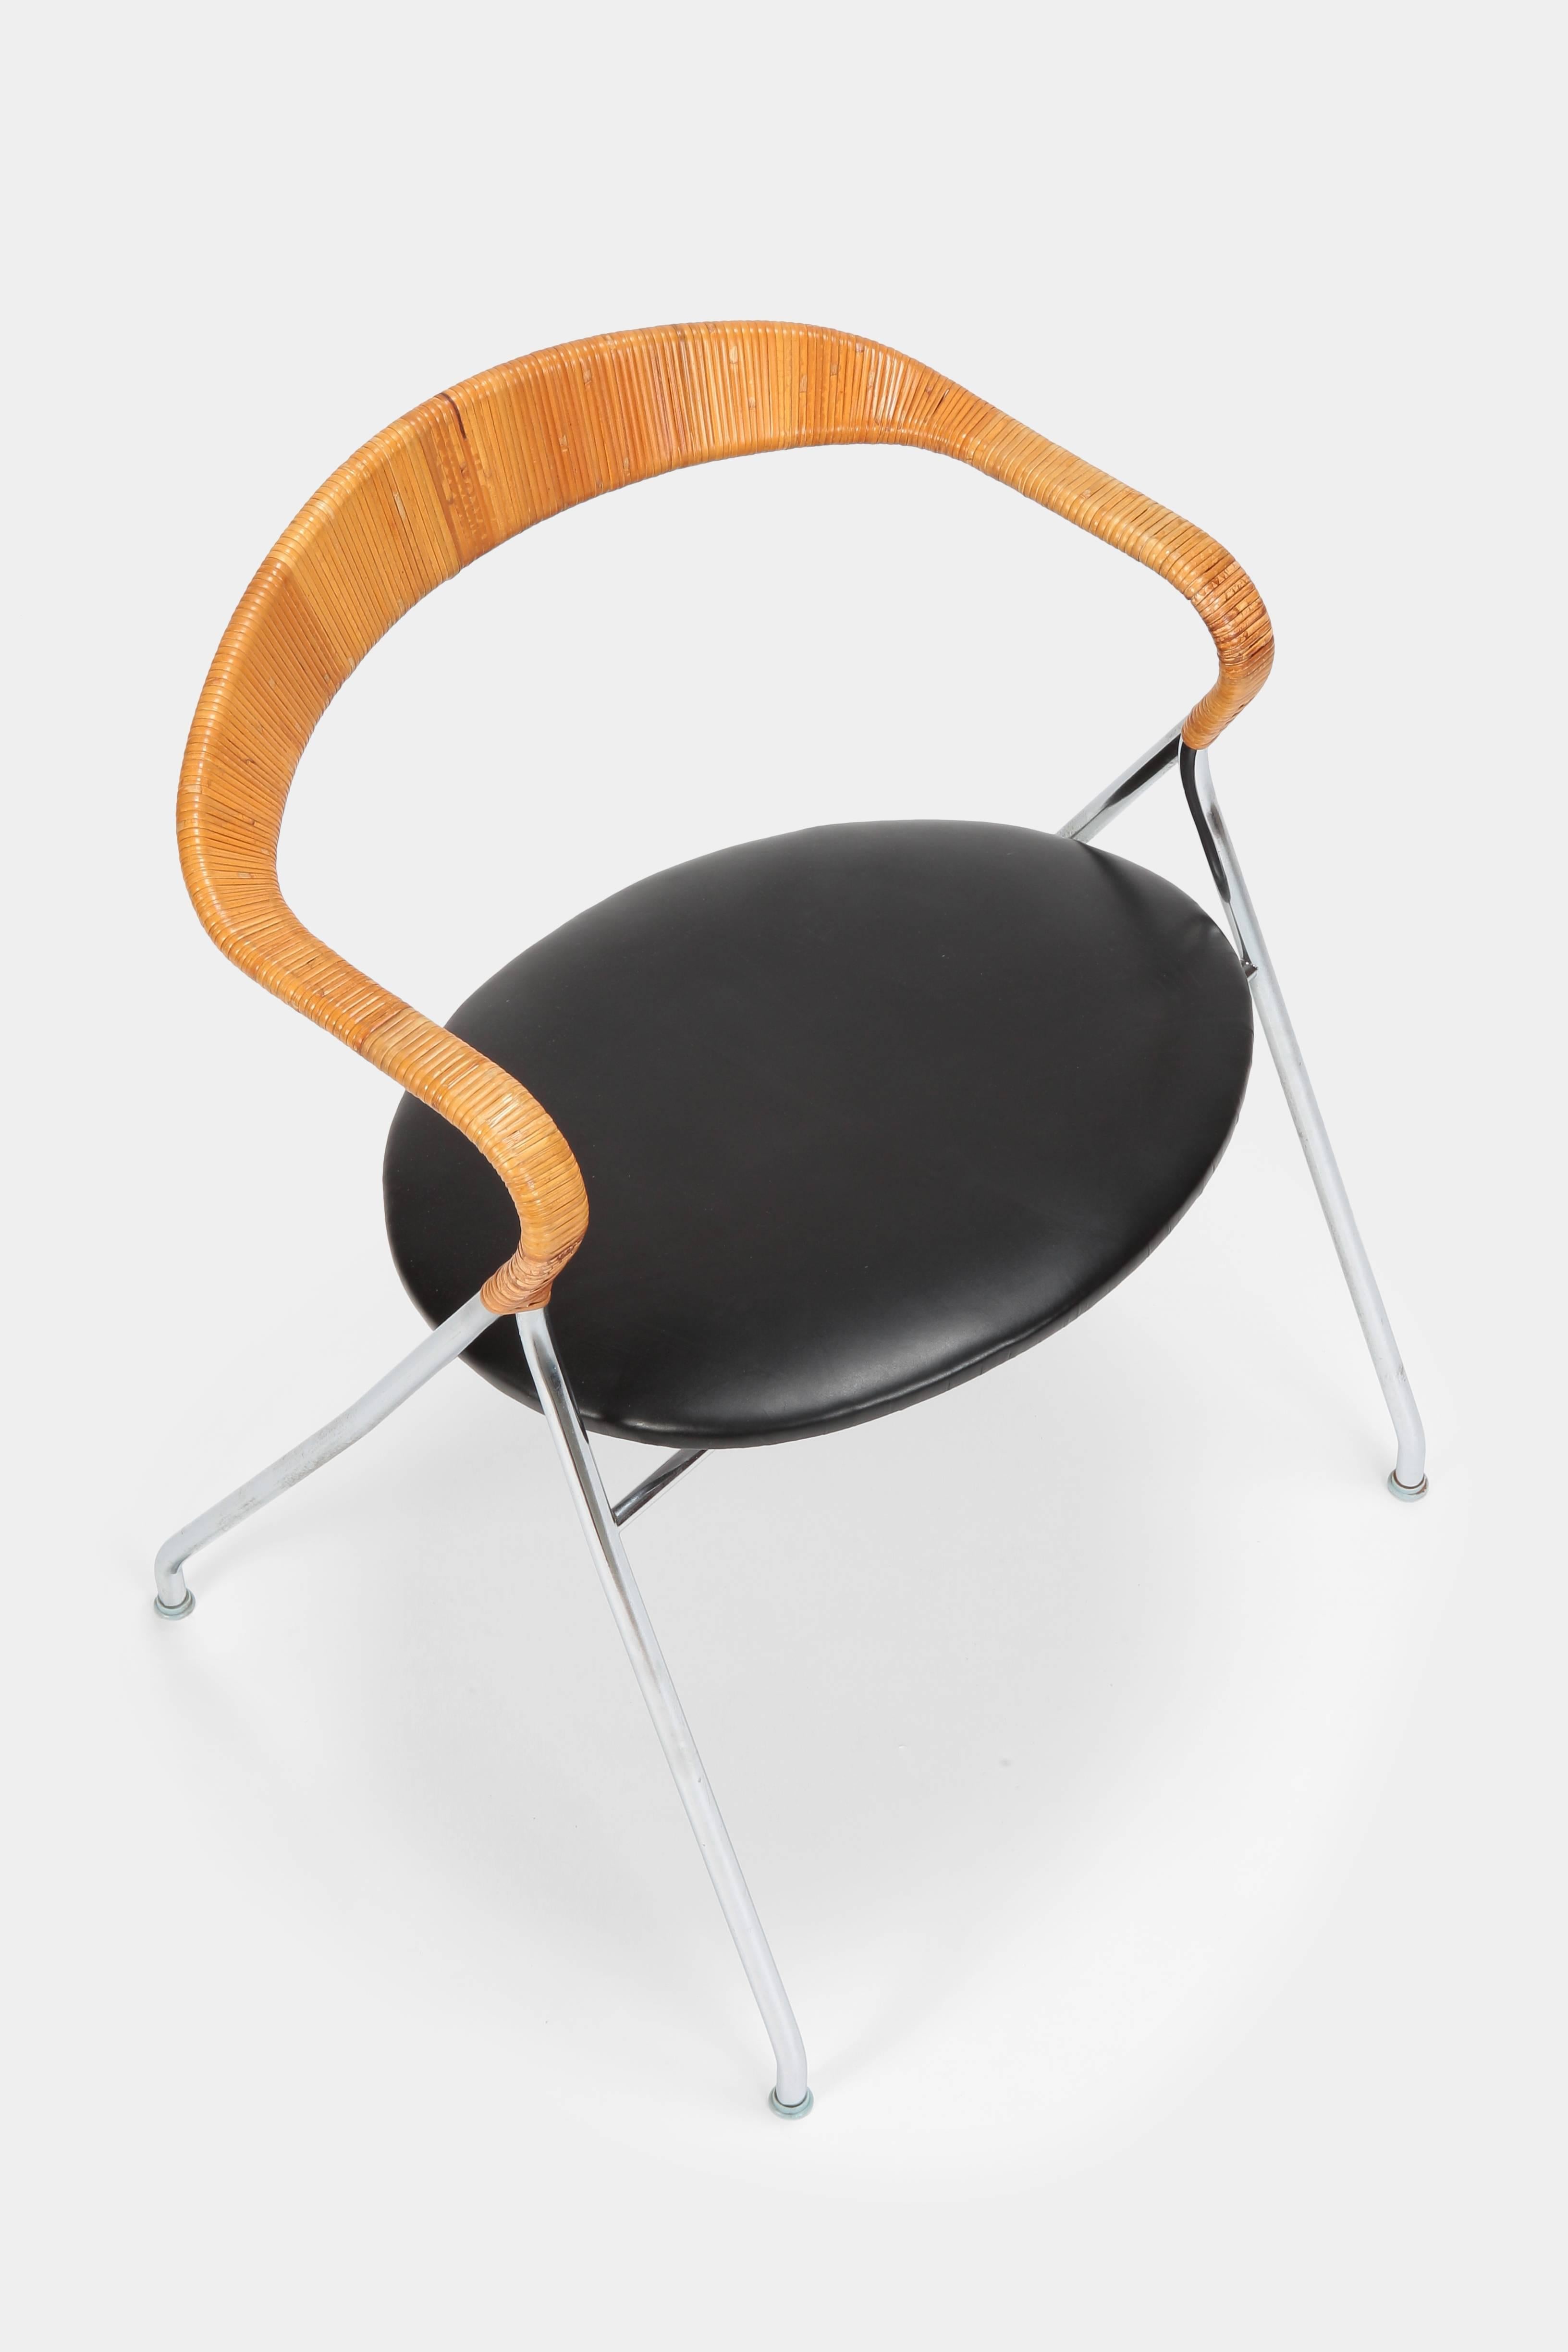 Hans Eichenberger “Saffa” HE103 Chair Dietiker, 1950s For Sale 1